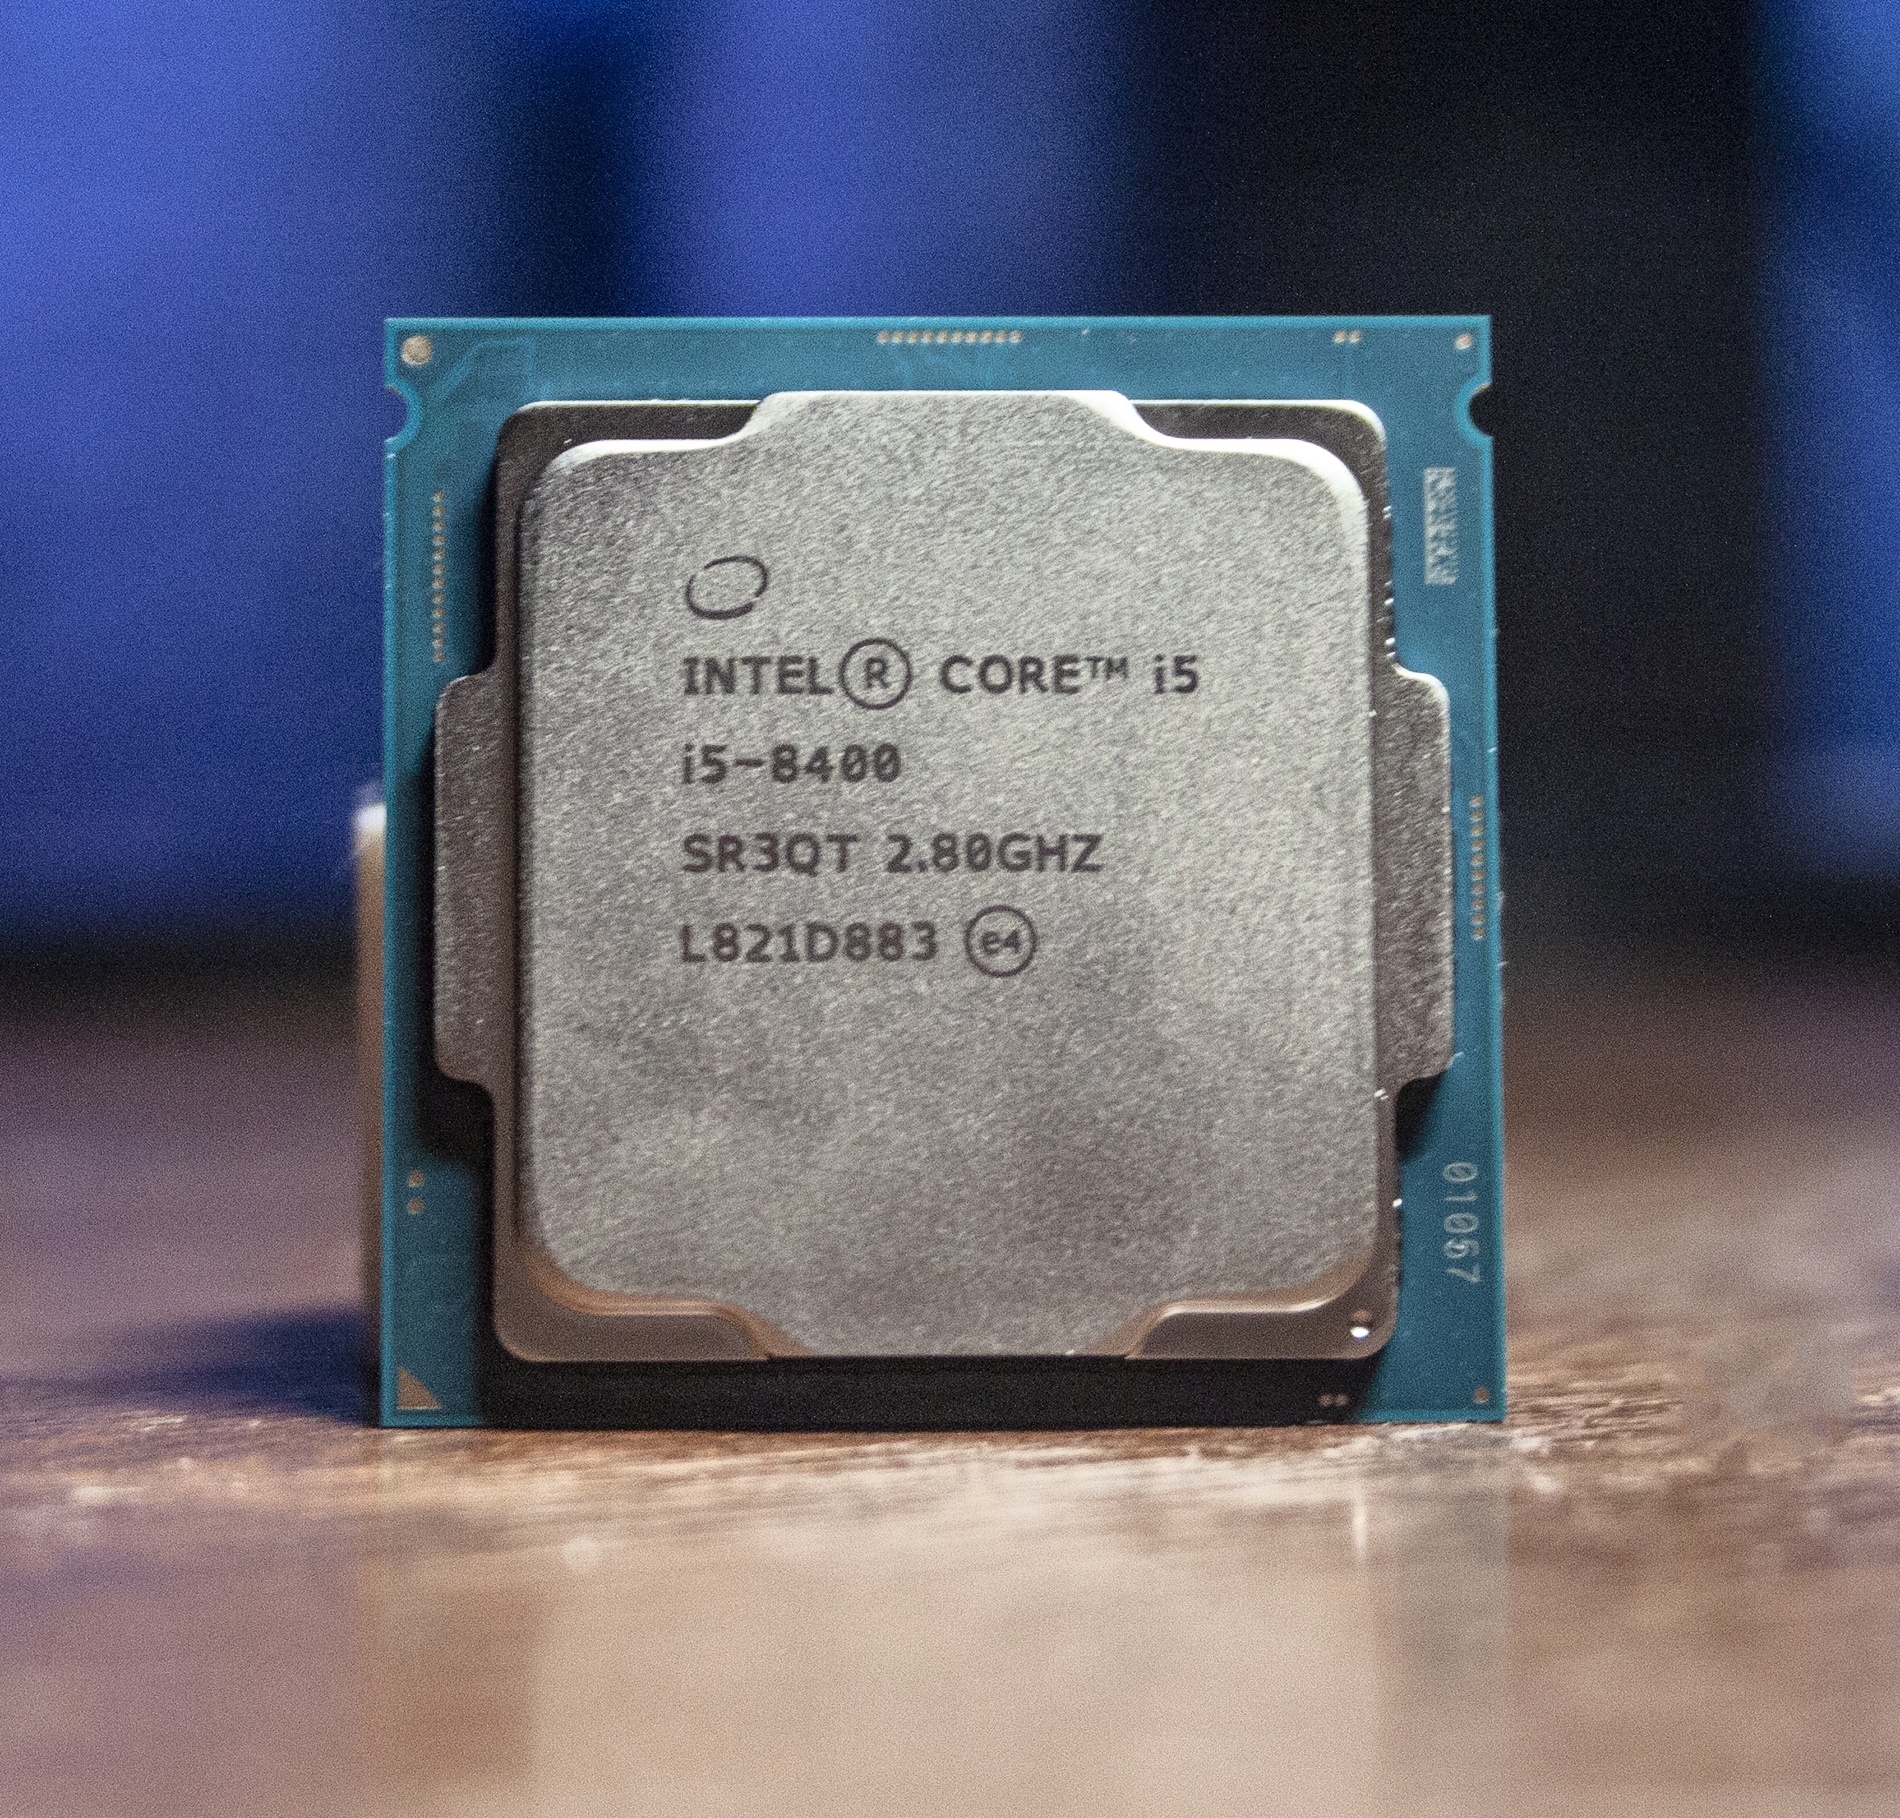 Интел коре i5 8400. Core i5 8400. Intel Core i5 8400 OEM. Процессор Intel Core i5-8400 Box. Intel Core i5-8400 lga1151 v2, 6 x 2800 МГЦ.